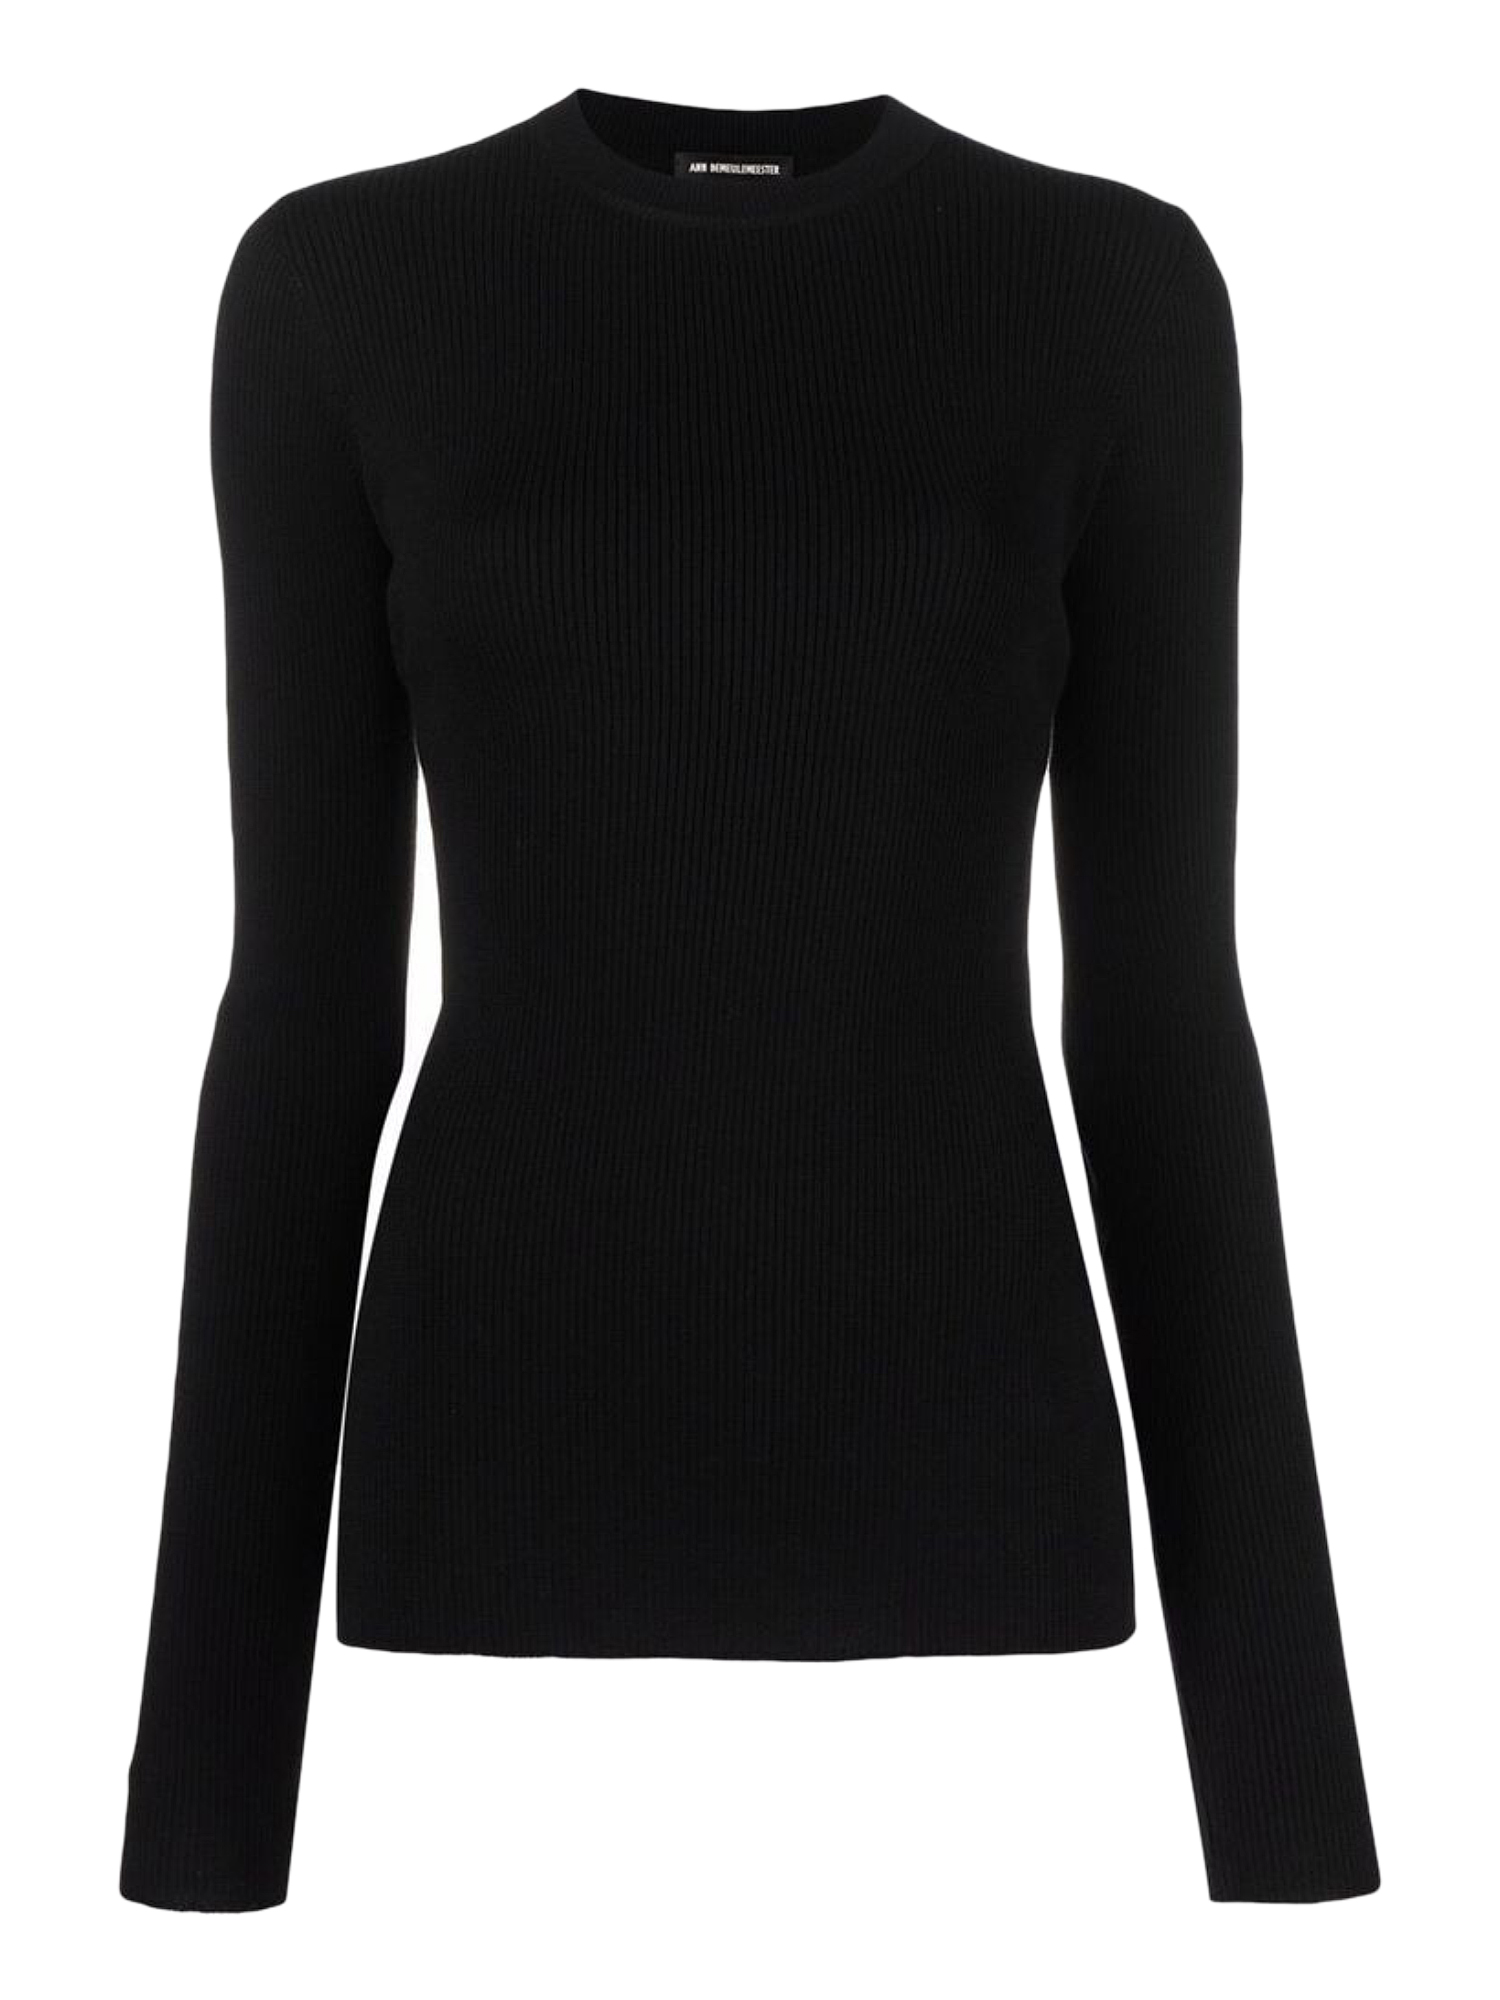 Ann Demeulemesteer Women's Knitwear & Sweatshirts -  - In Black S